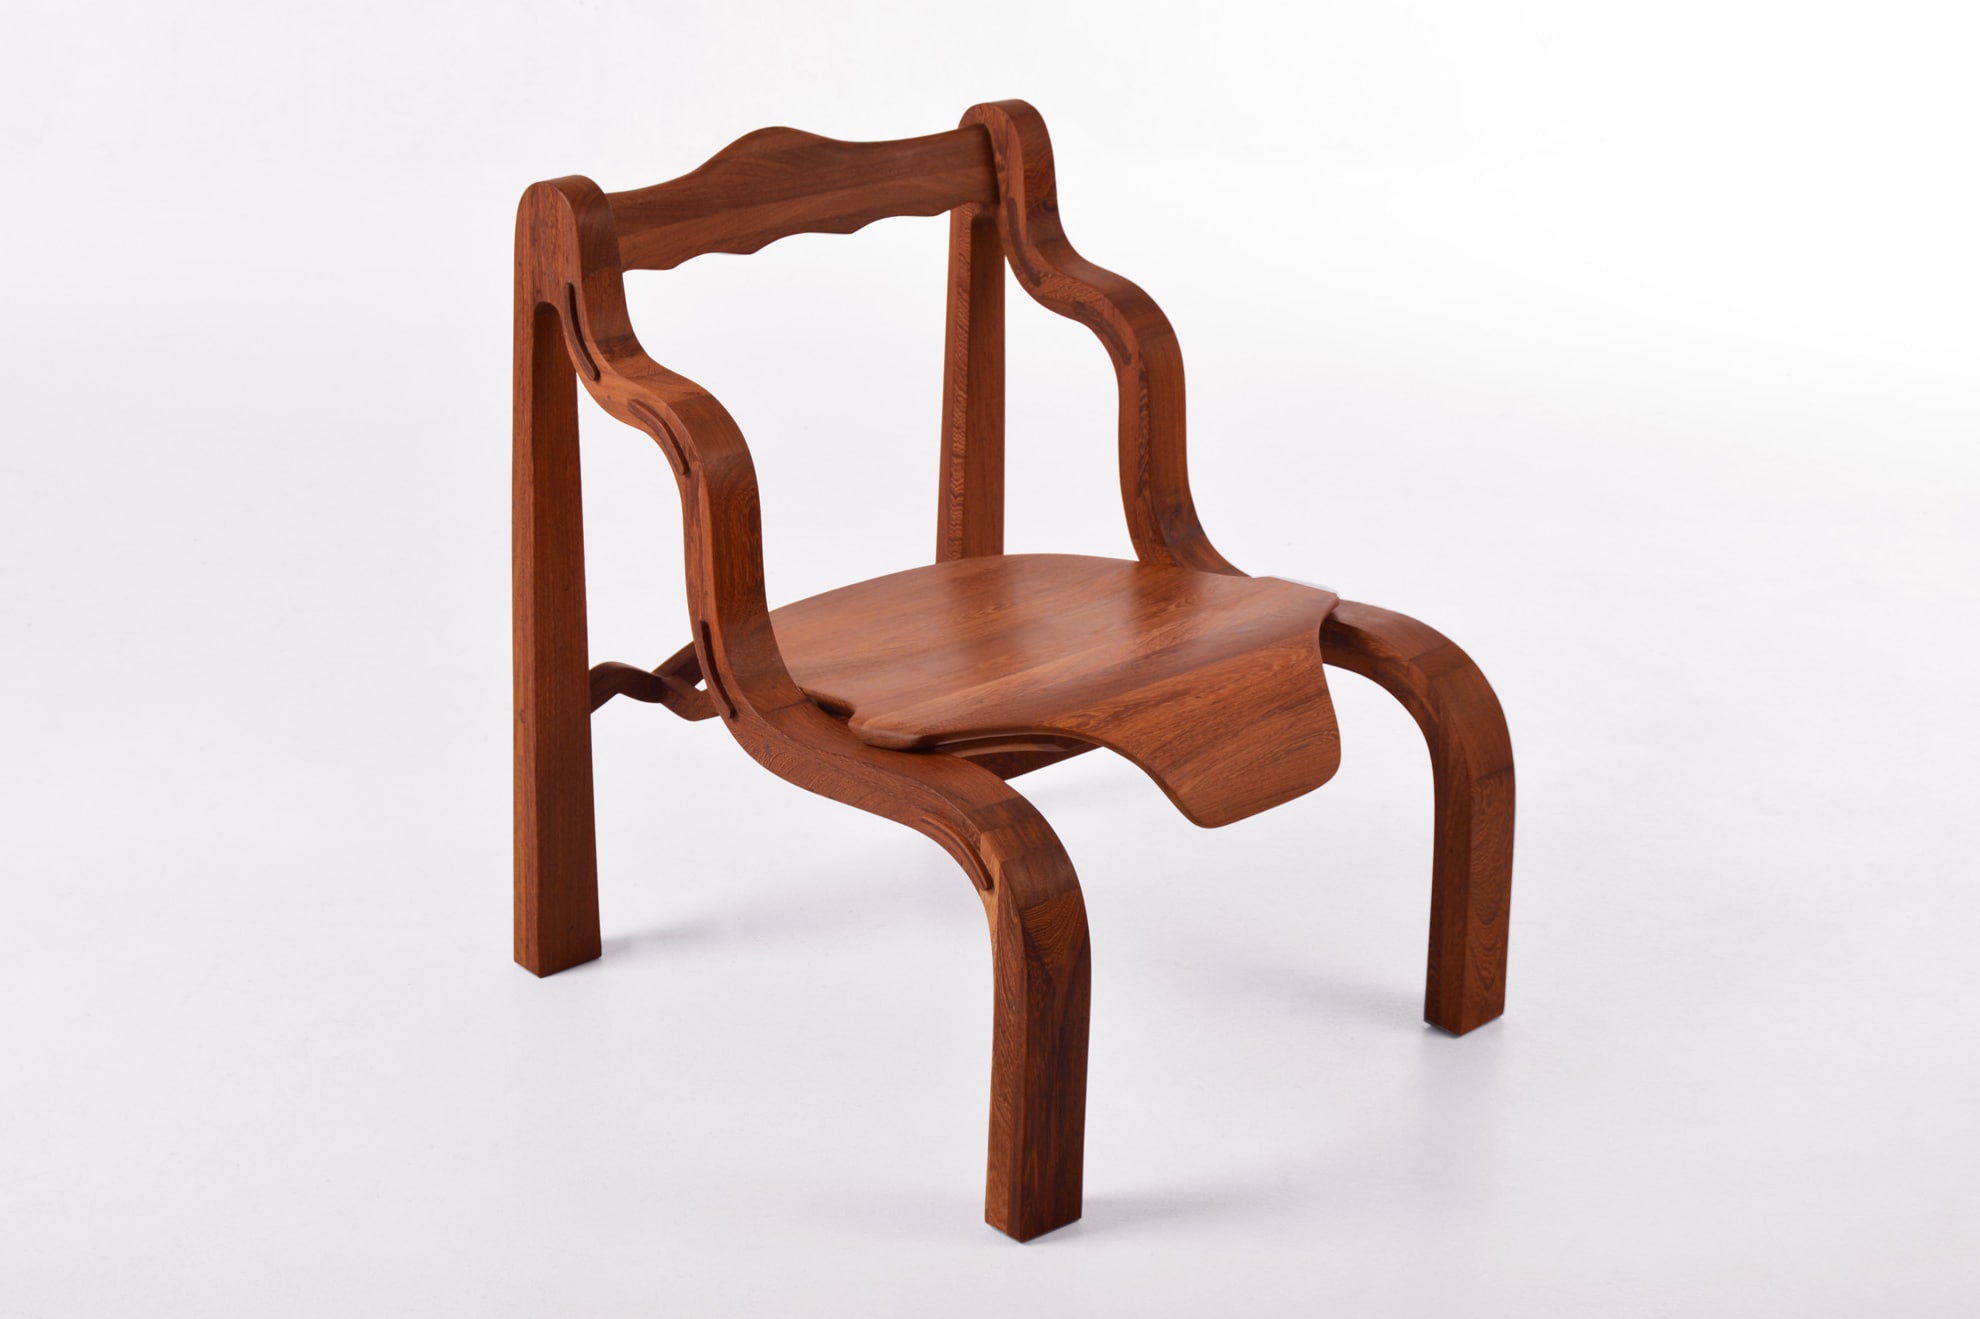 Foro Chair, collezione Kompa, di Mabeo Studio per FENDI. Courtesy Mabeo Studio.